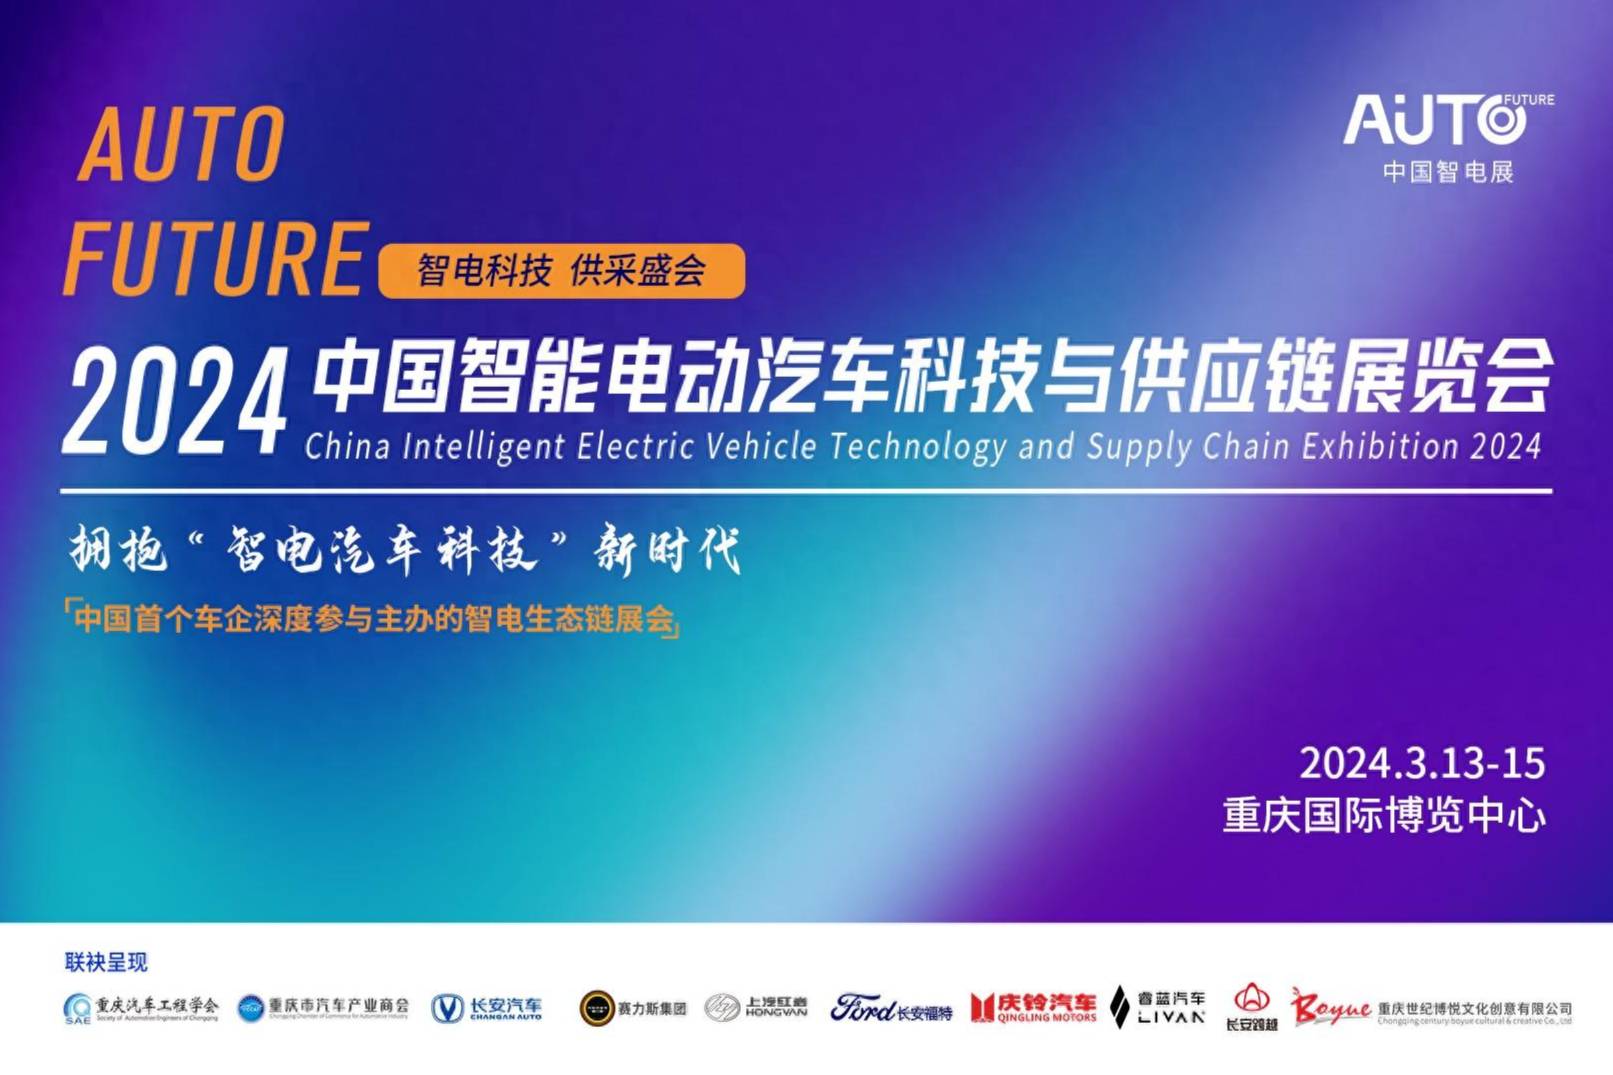 重庆电信邀您参观2024中国智能电动汽车科技与供应链展览会